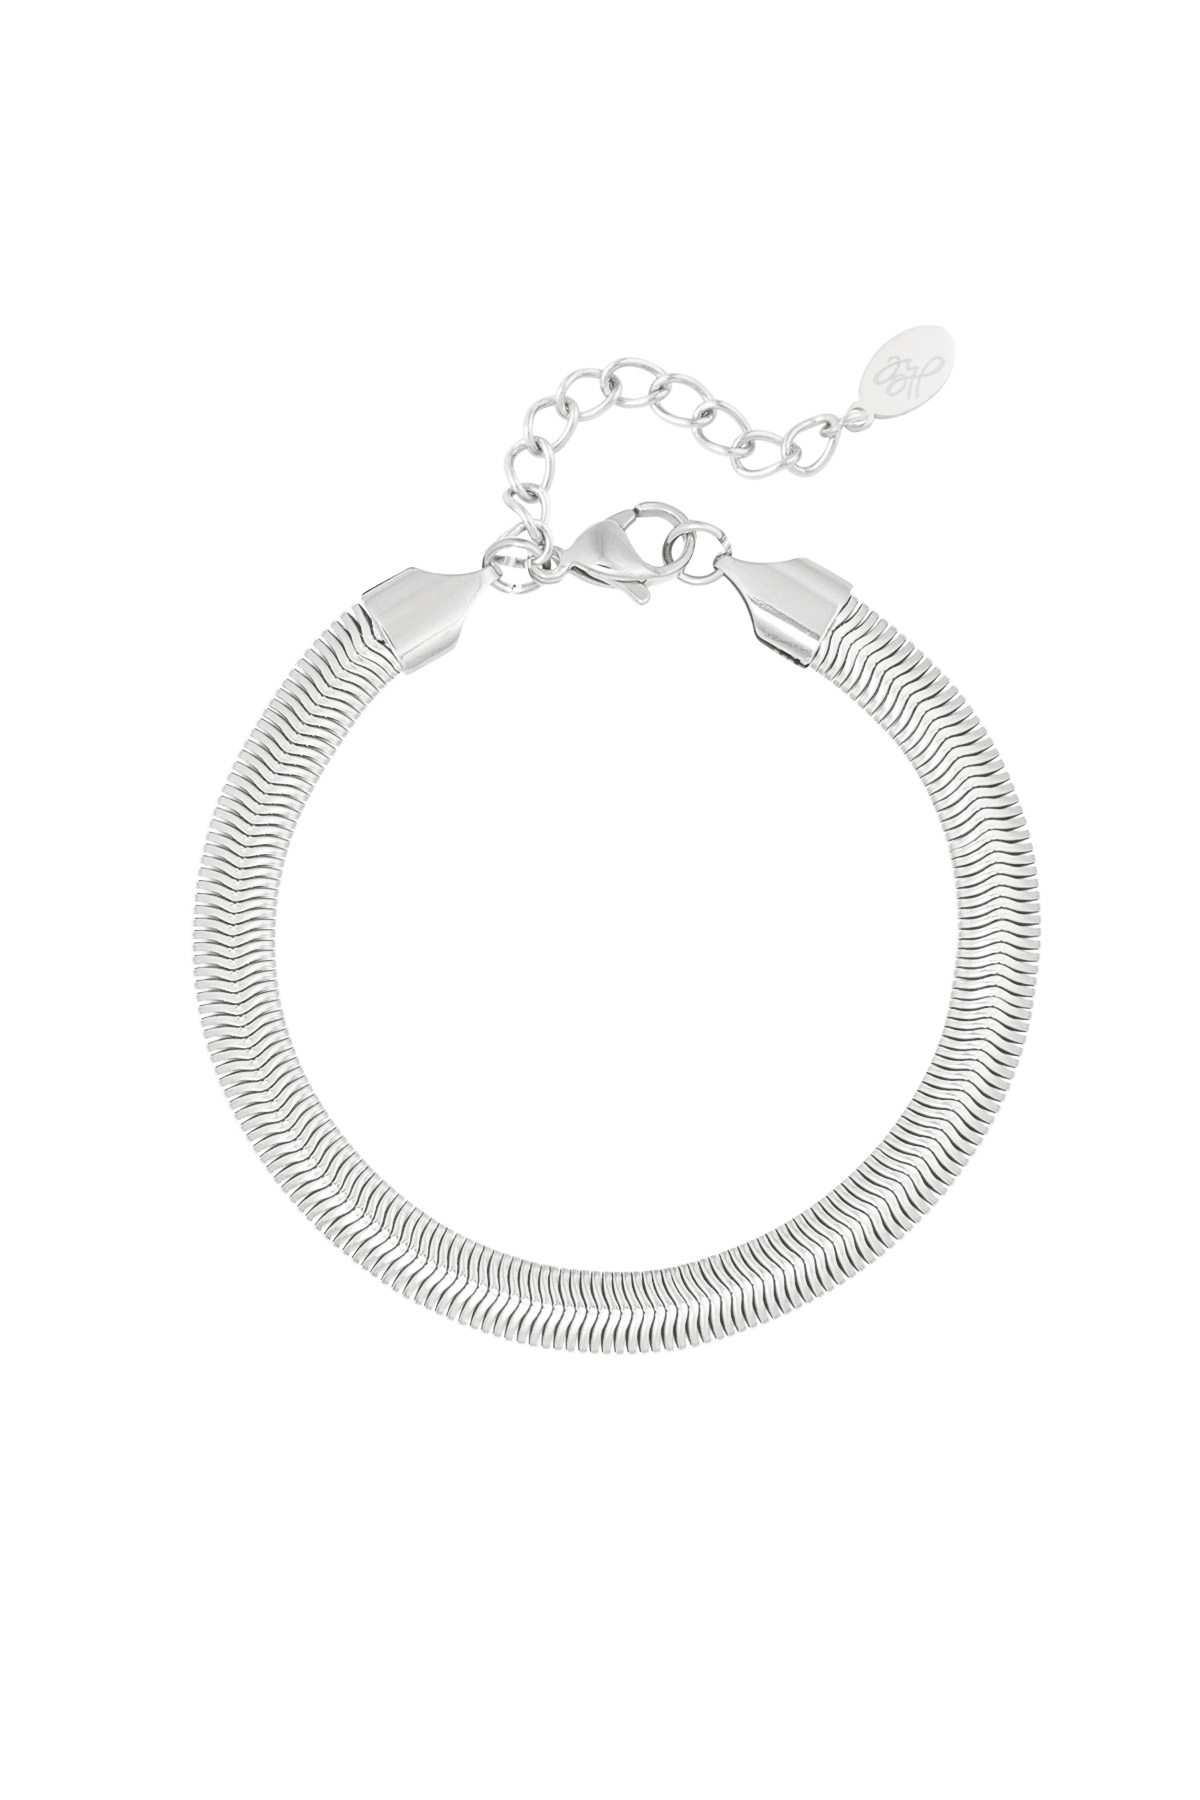 Bracelet flat coarse - silver-6.0MM h5 